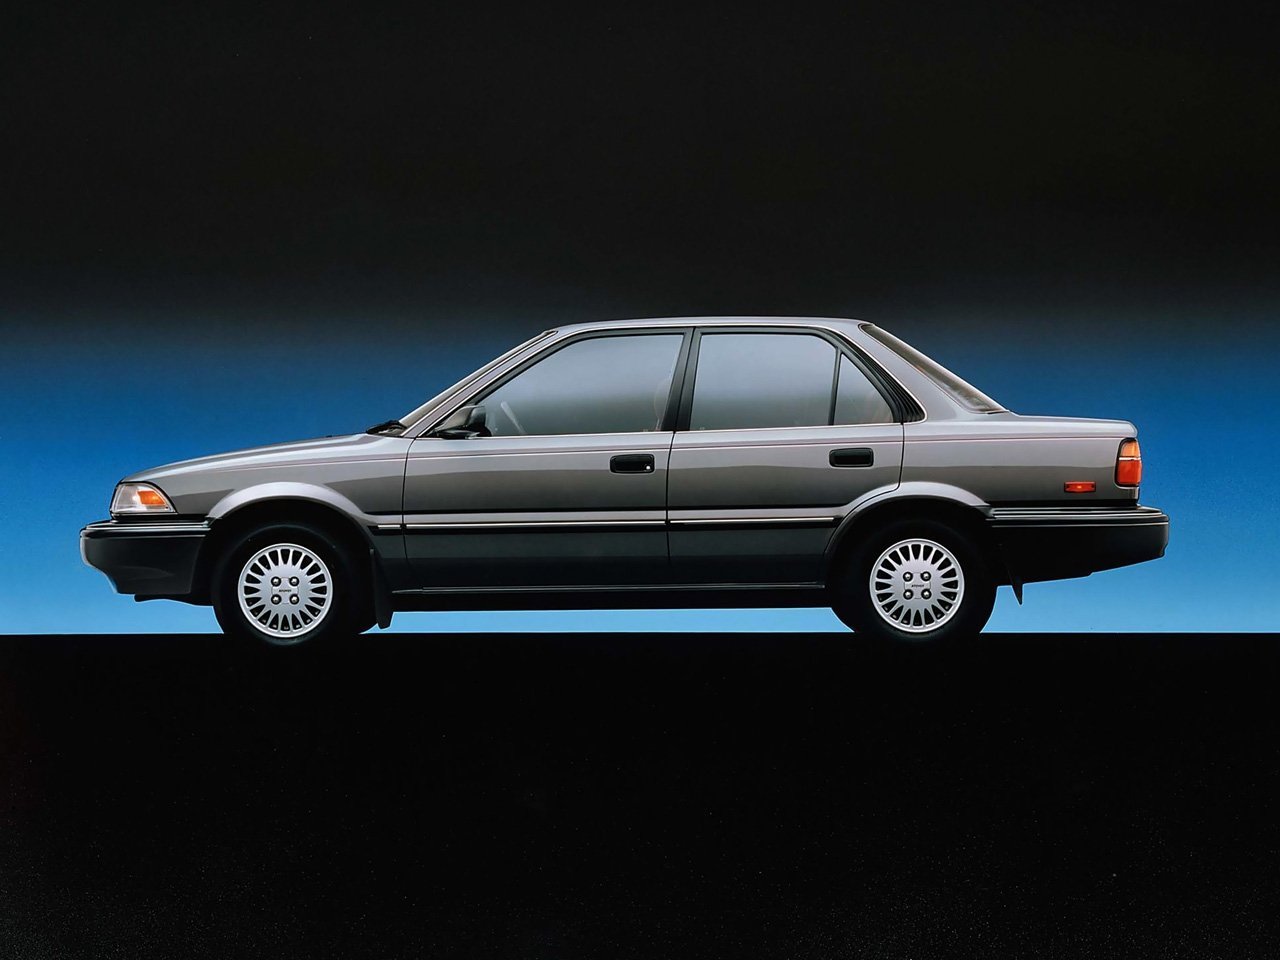 седан Toyota Corolla 1987 - 1991г выпуска модификация 1.3 AT (75 л.с.)